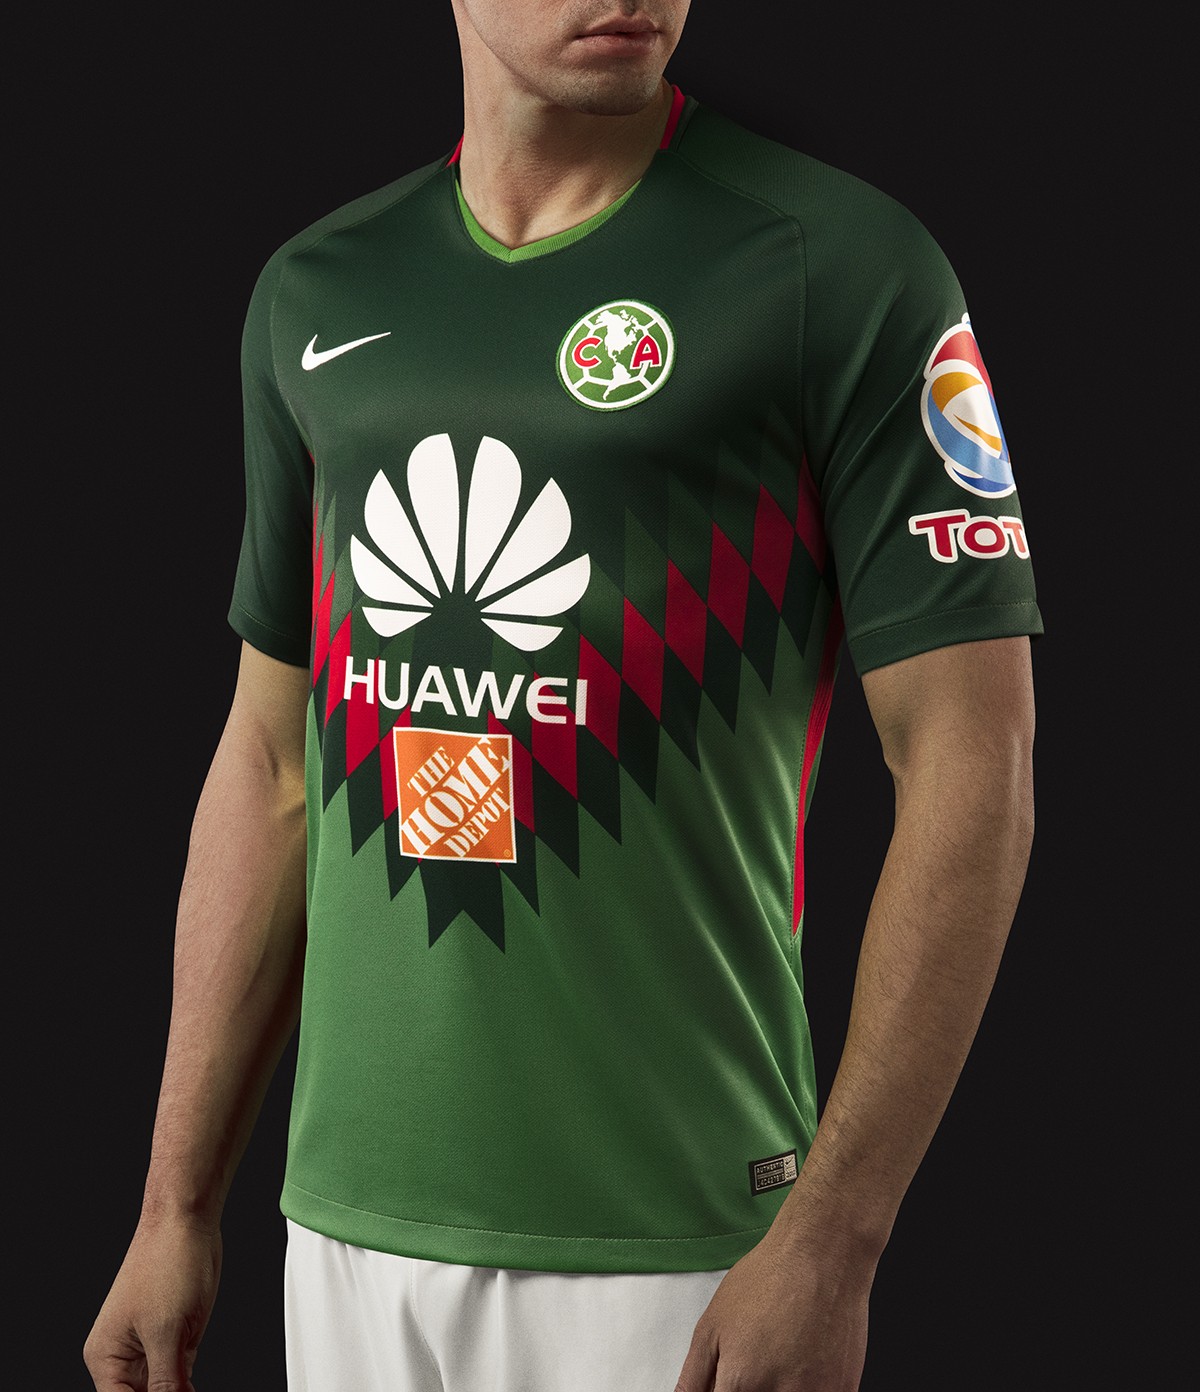 致敬祖国!墨西哥美洲2018赛季三色球衣发布!